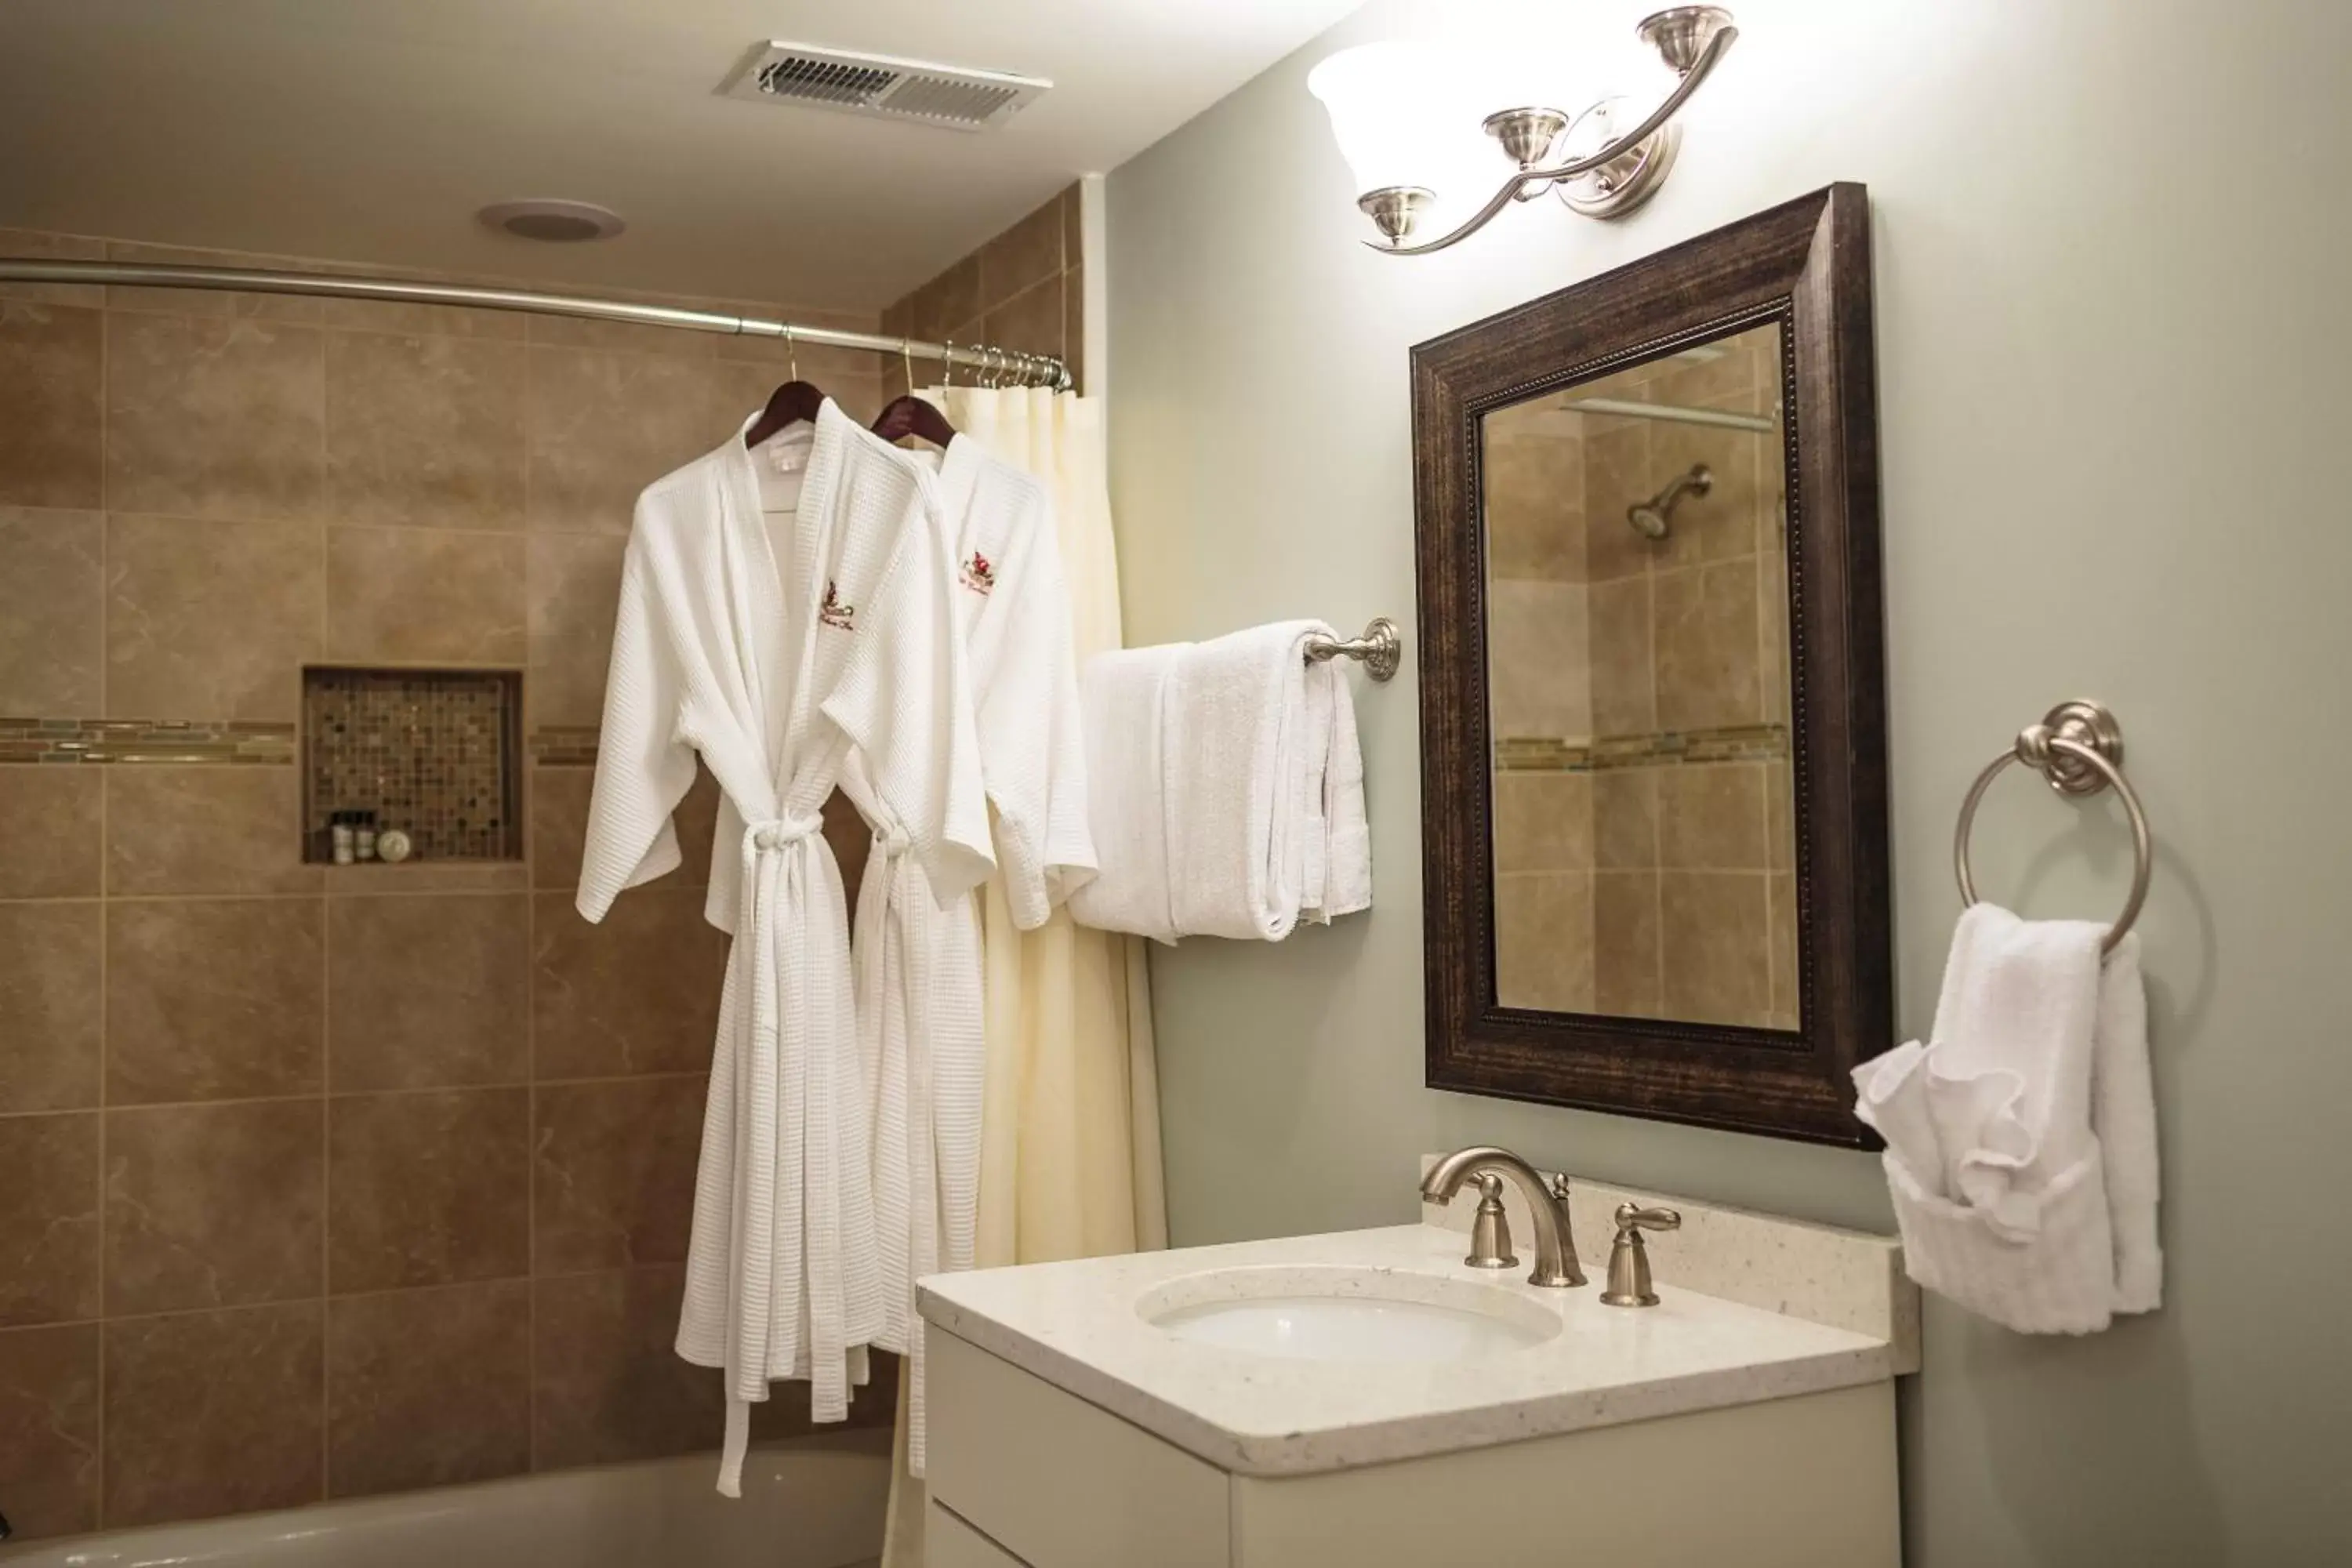 Bedroom, Bathroom in Olde Harbour Inn, Historic Inns of Savannah Collection